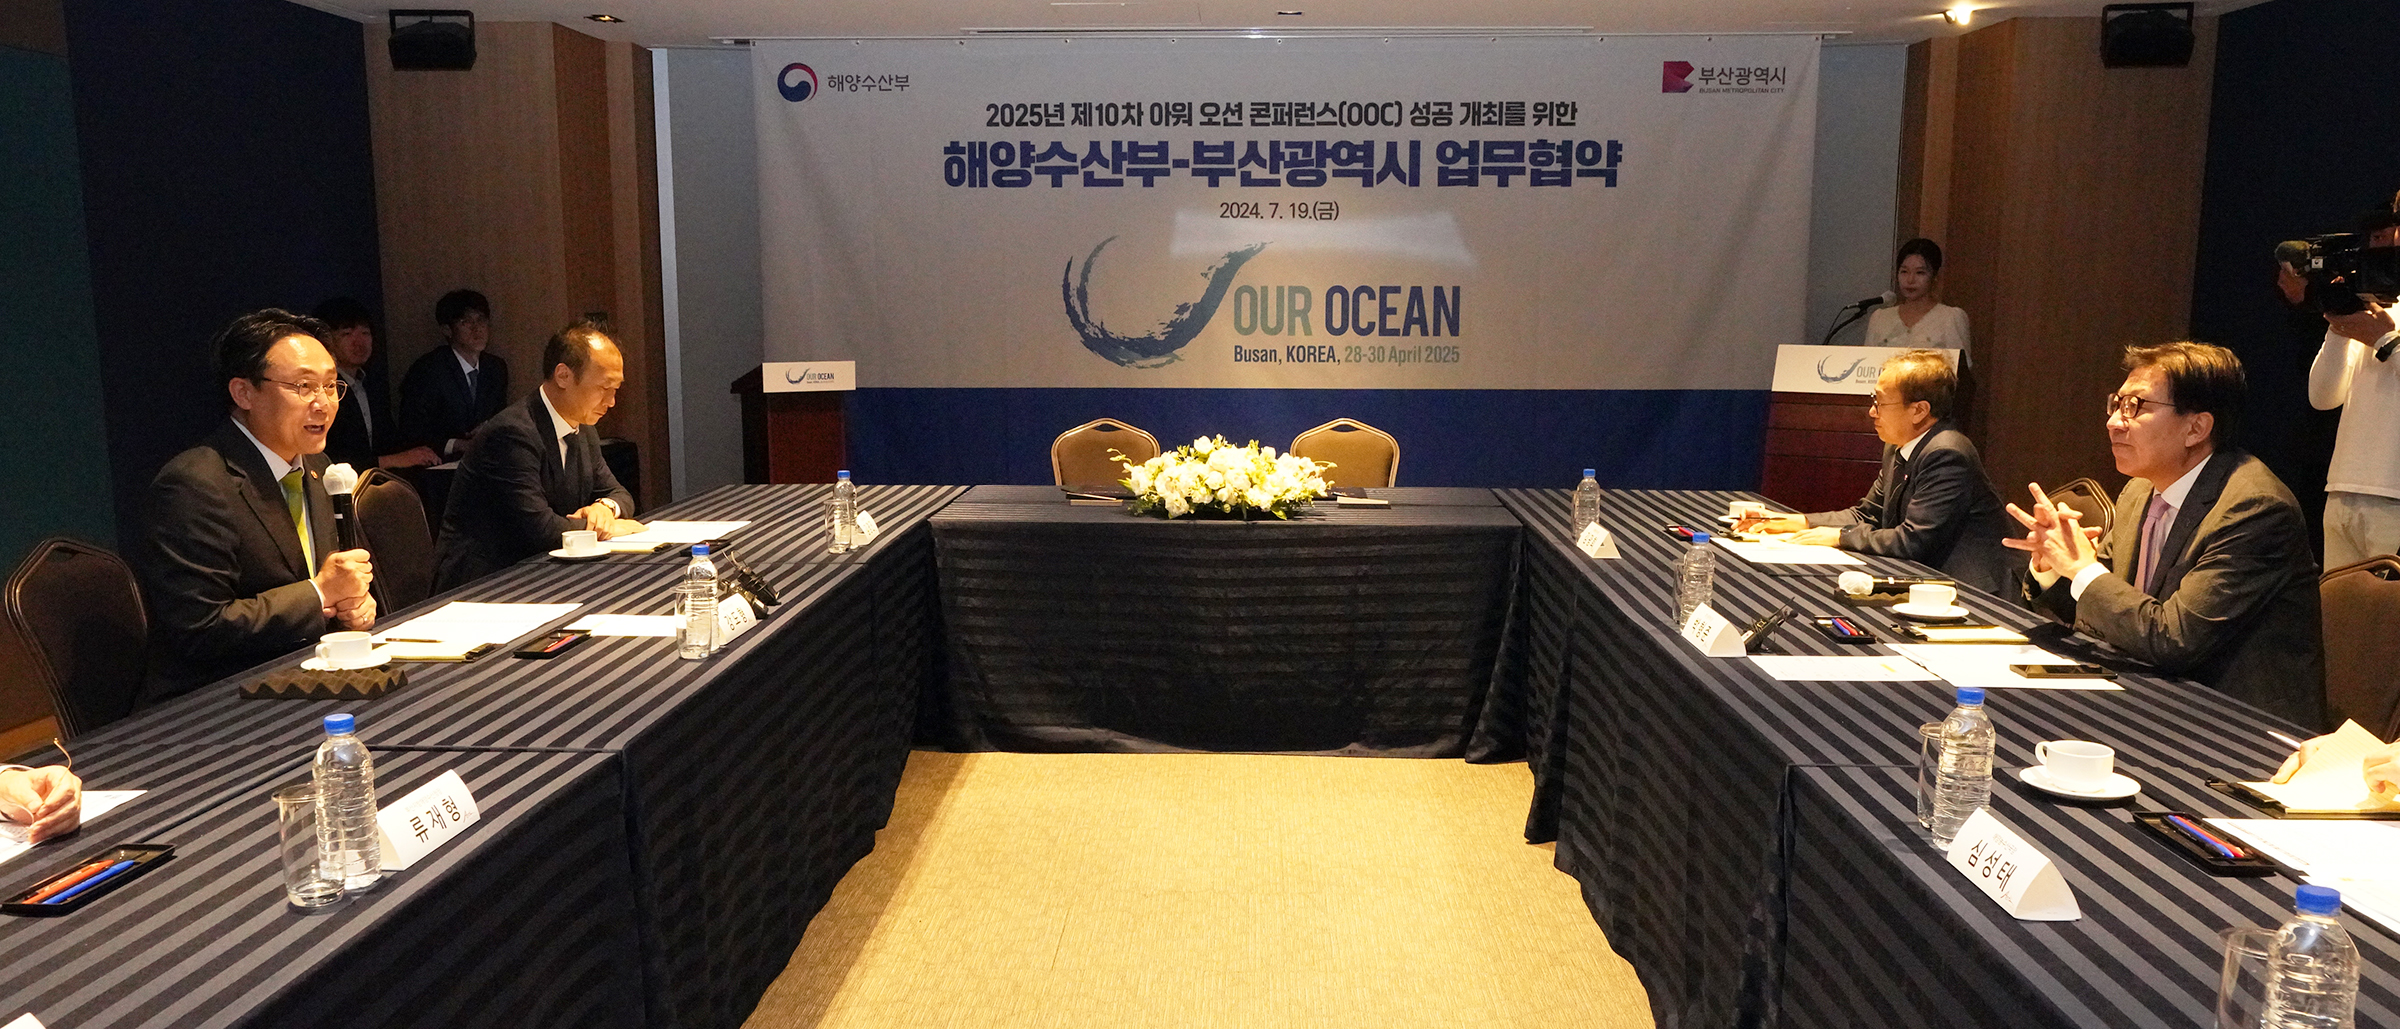 제10차 아워 오션 콘퍼런스(Our Ocean Conference) 성공 개최를 위한 협약 체결(24